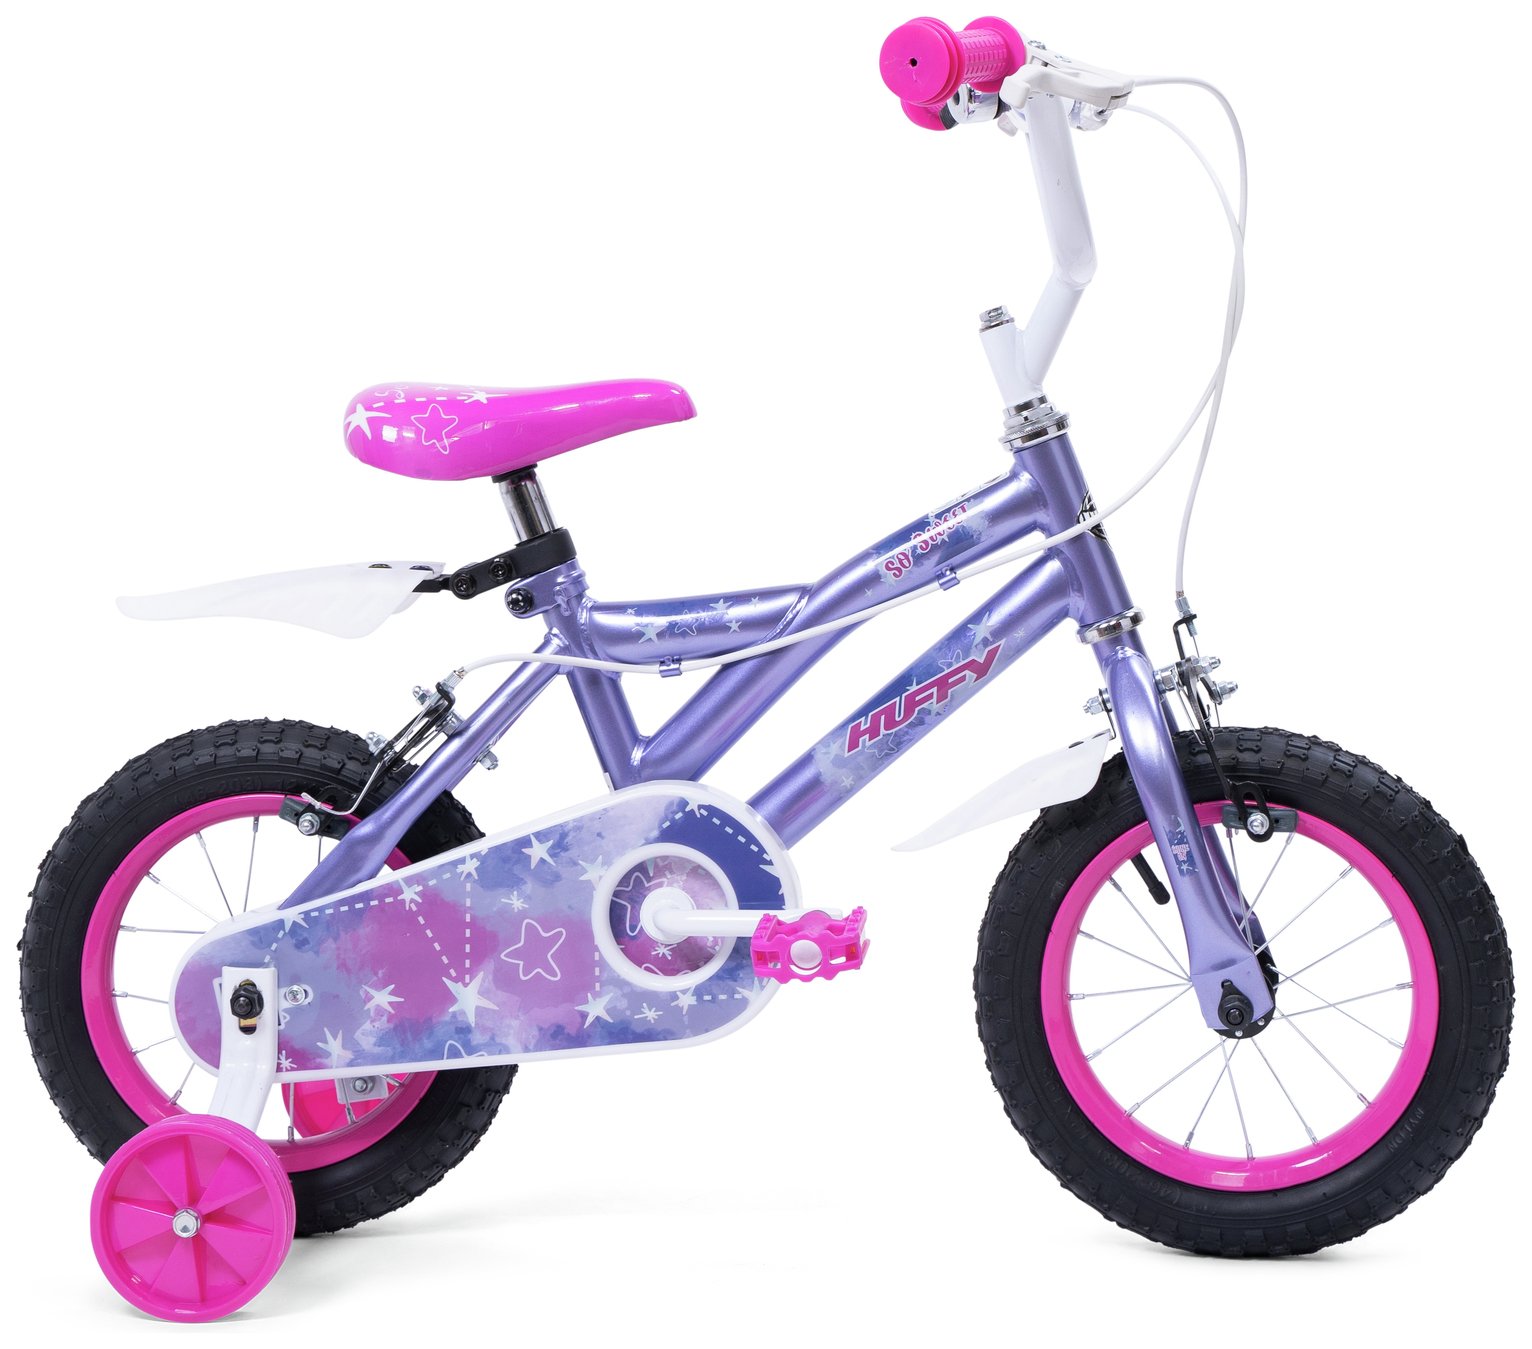 Huffy So Sweet 12 inch Wheel Size Kids Bike - Purple